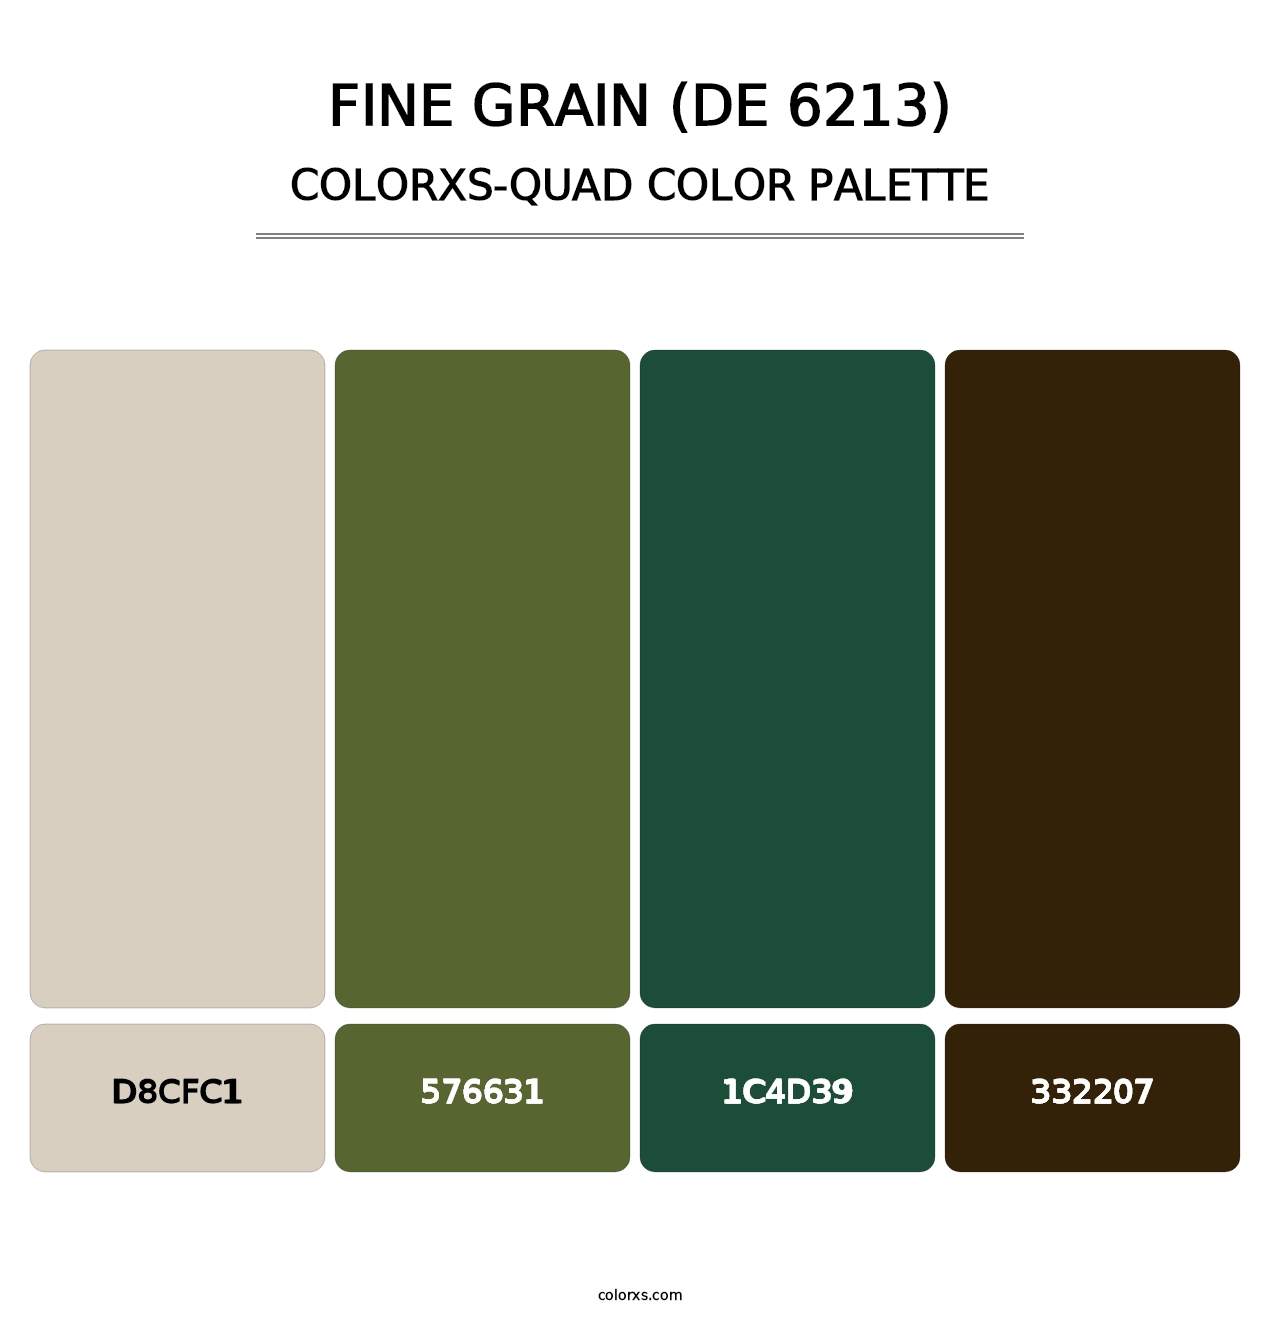 Fine Grain (DE 6213) - Colorxs Quad Palette